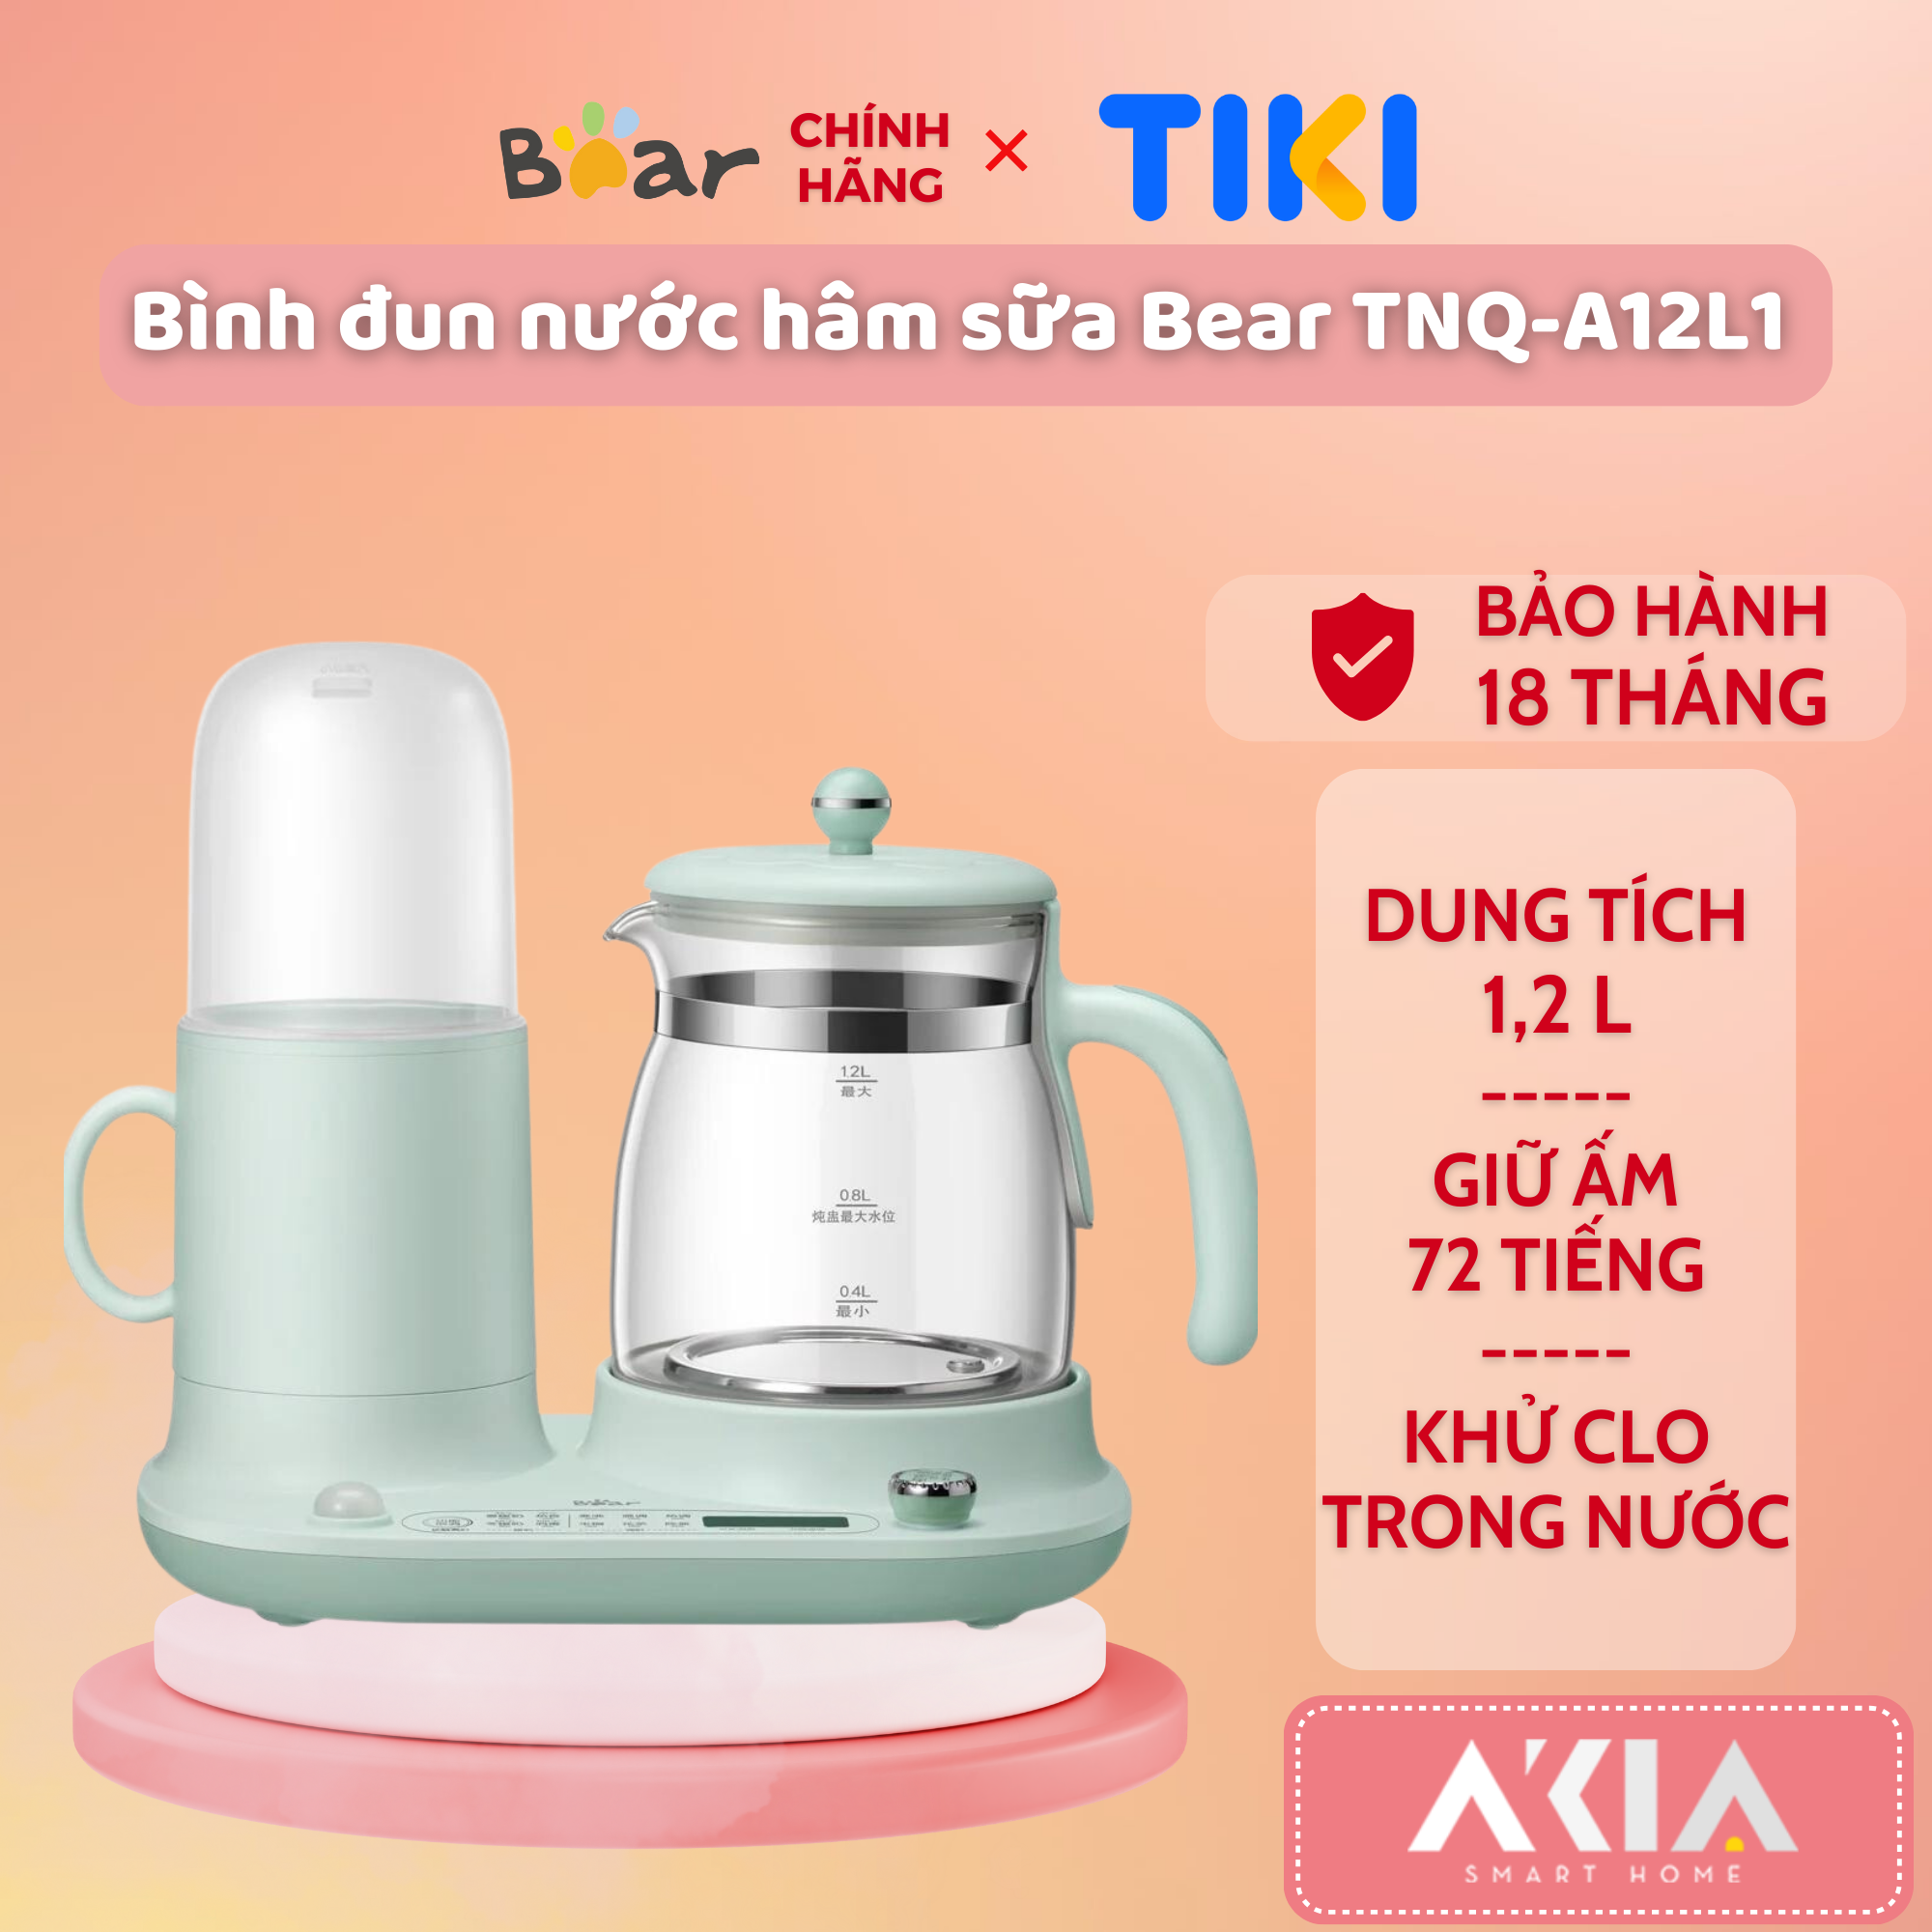 Máy nấu nước đa năng và giữ ấm Bear TNQ-A12L1 - Hàng chính hãng